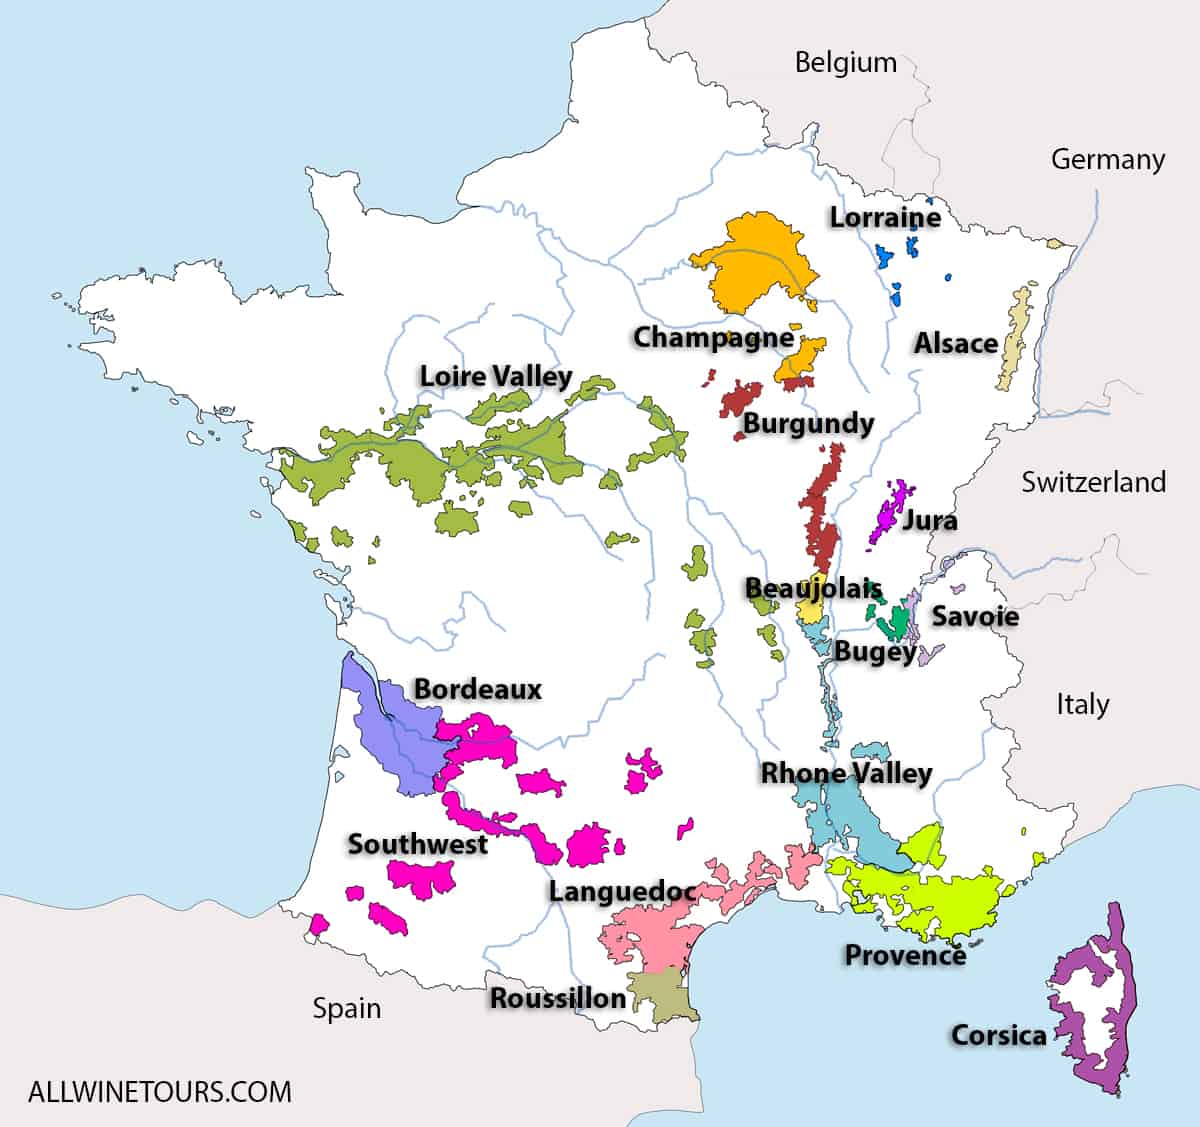 Perth Berri Buch South West France Wine Map Beistelltisch Schub Prestige